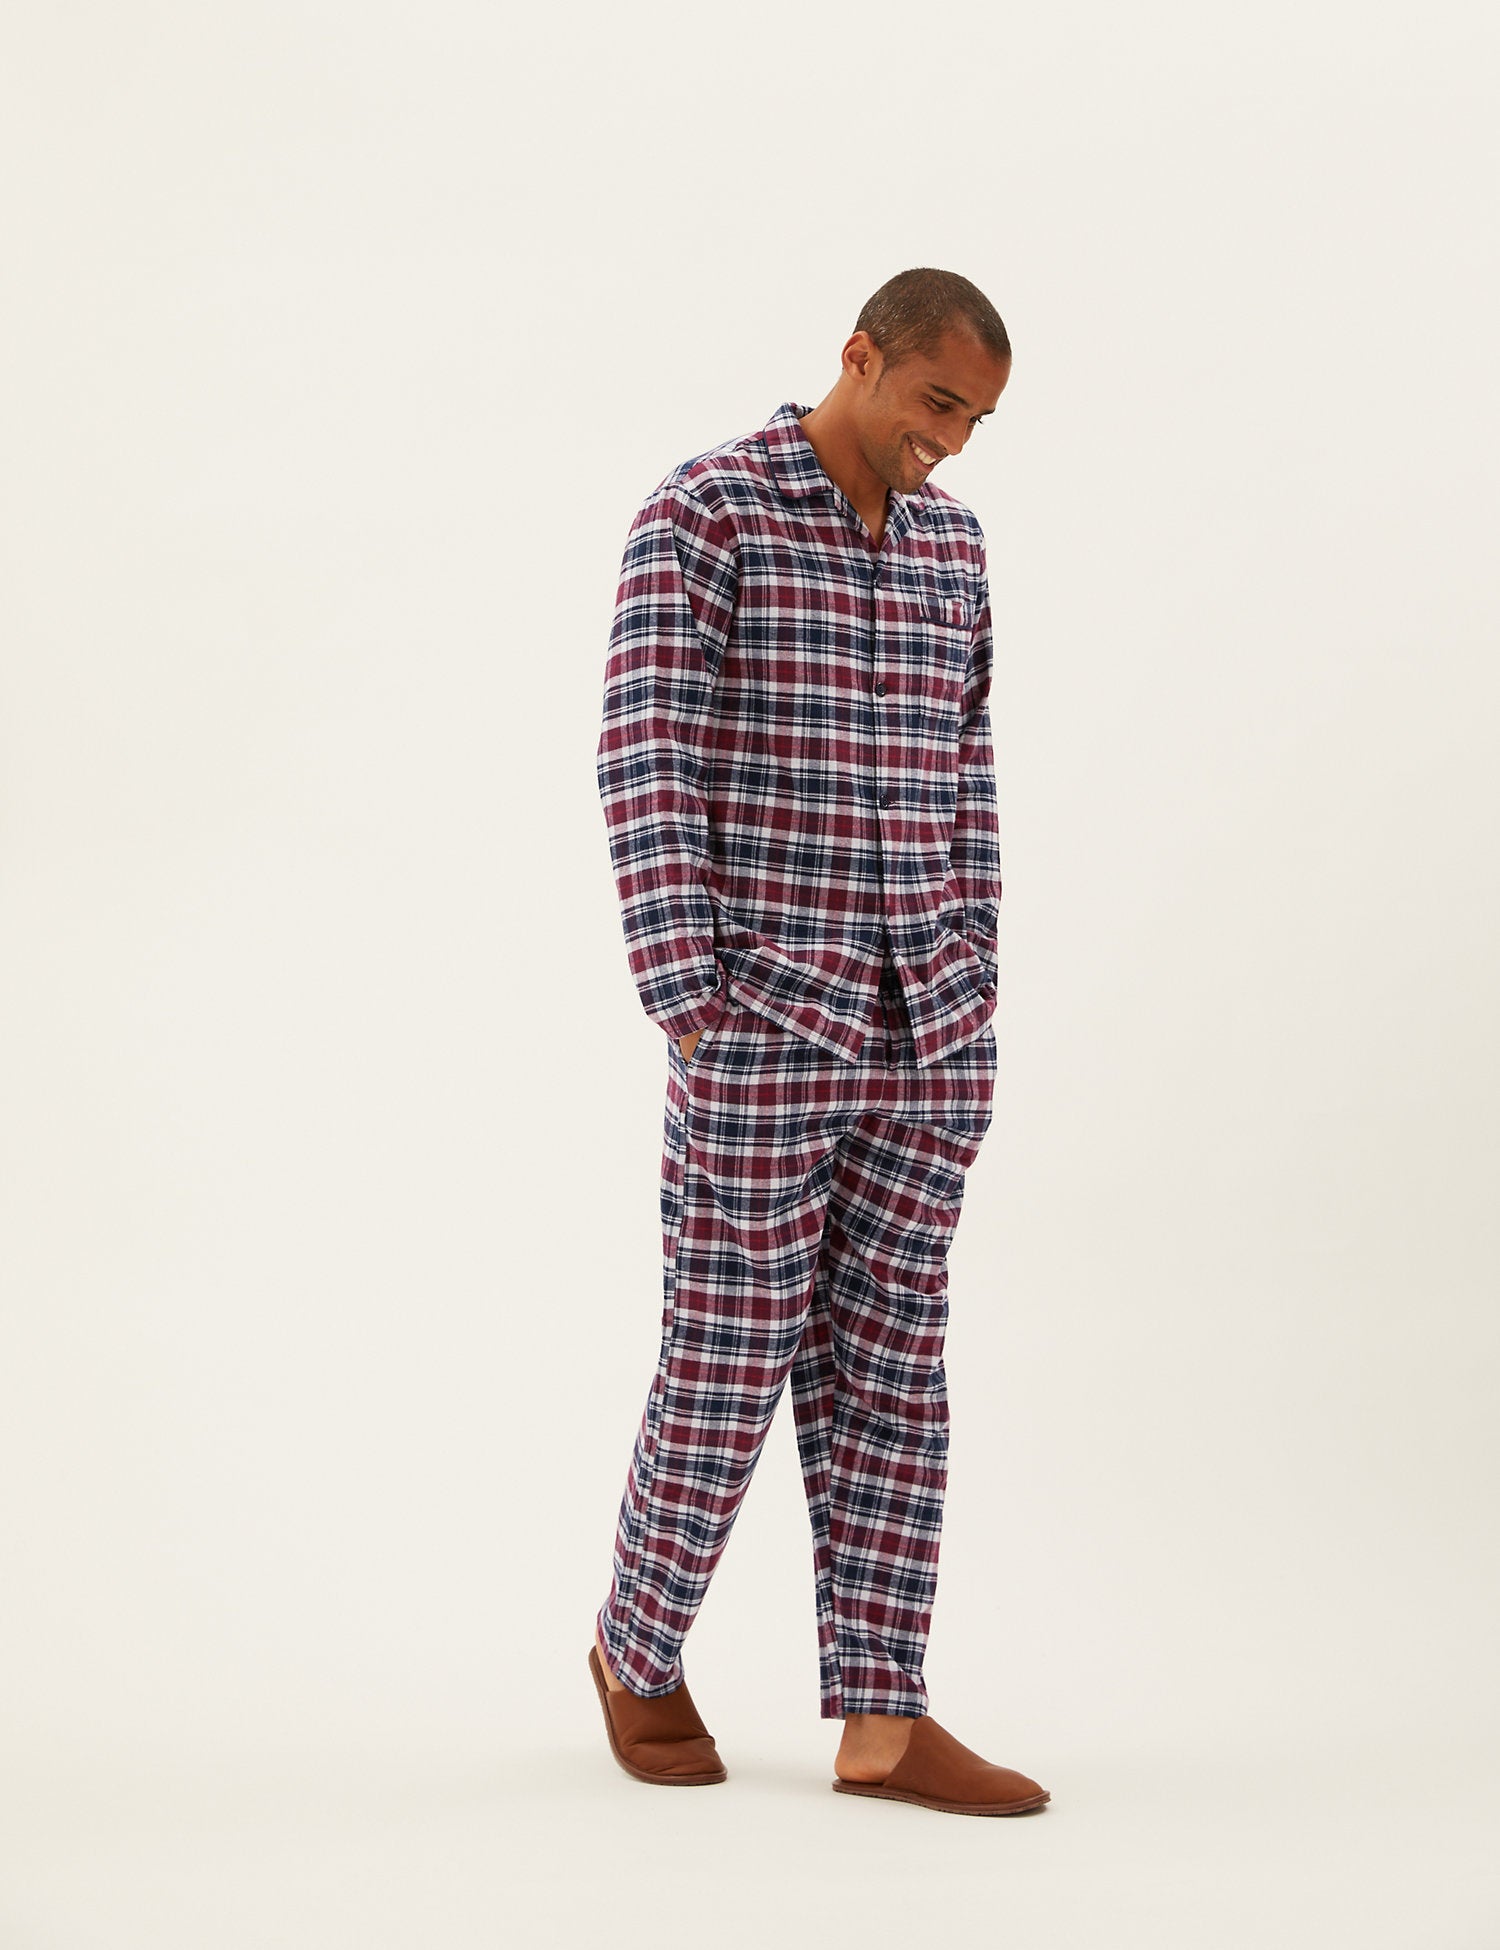 Brushed Cotton Checked Pyjama Set